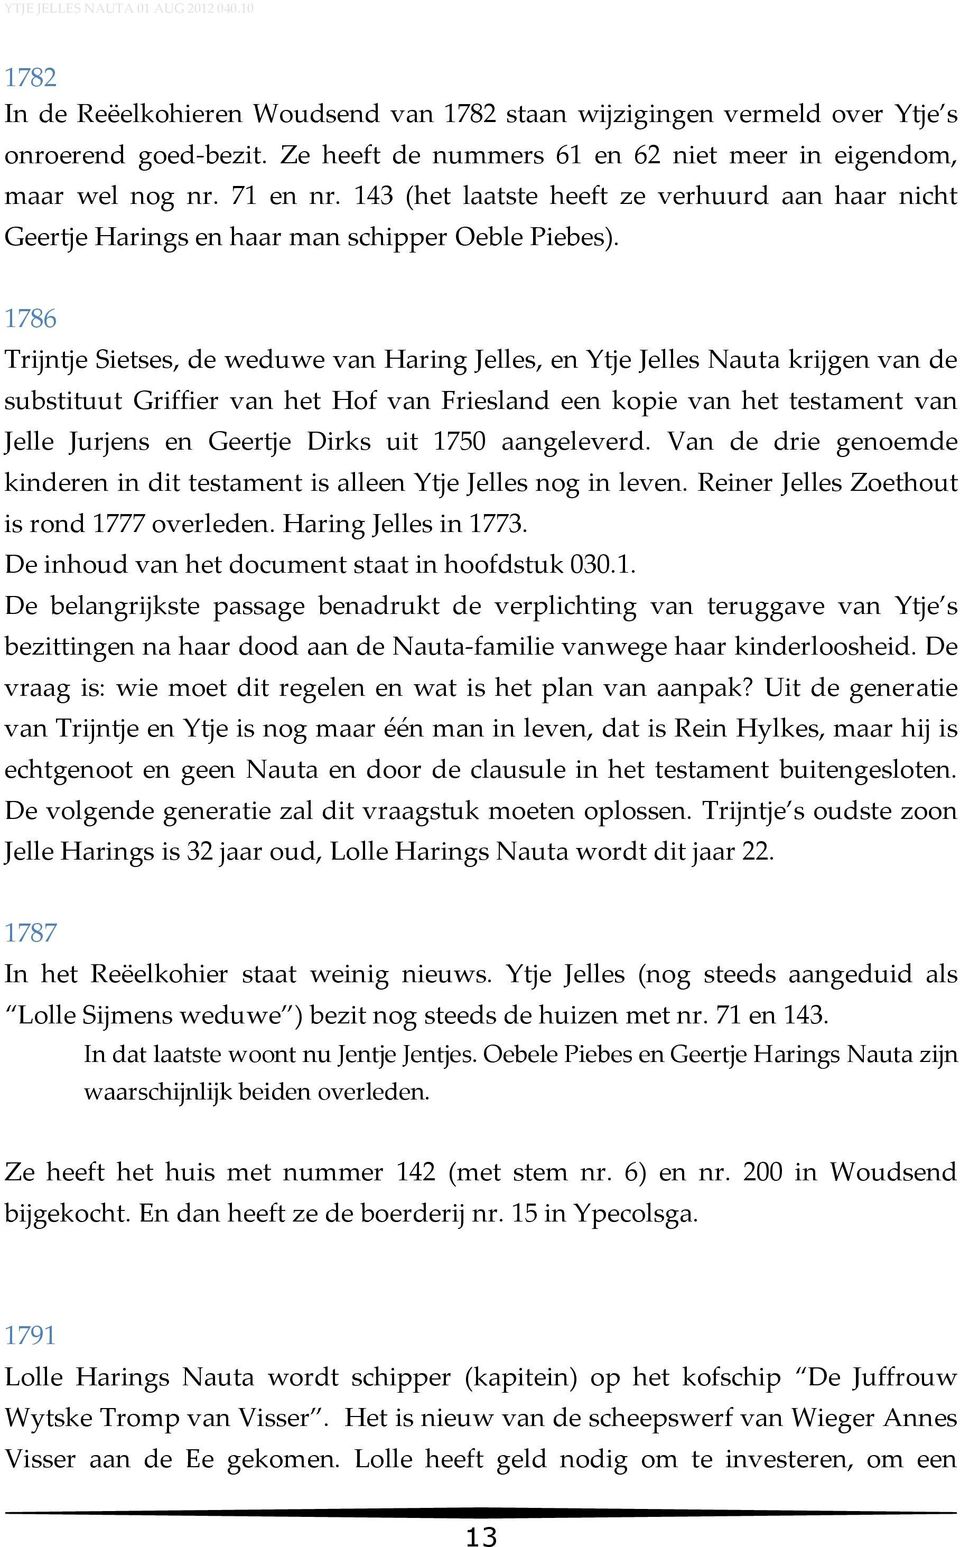 1786 Trijntje Sietses, de weduwe van Haring Jelles, en Ytje Jelles Nauta krijgen van de substituut Griffier van het Hof van Friesland een kopie van het testament van Jelle Jurjens en Geertje Dirks